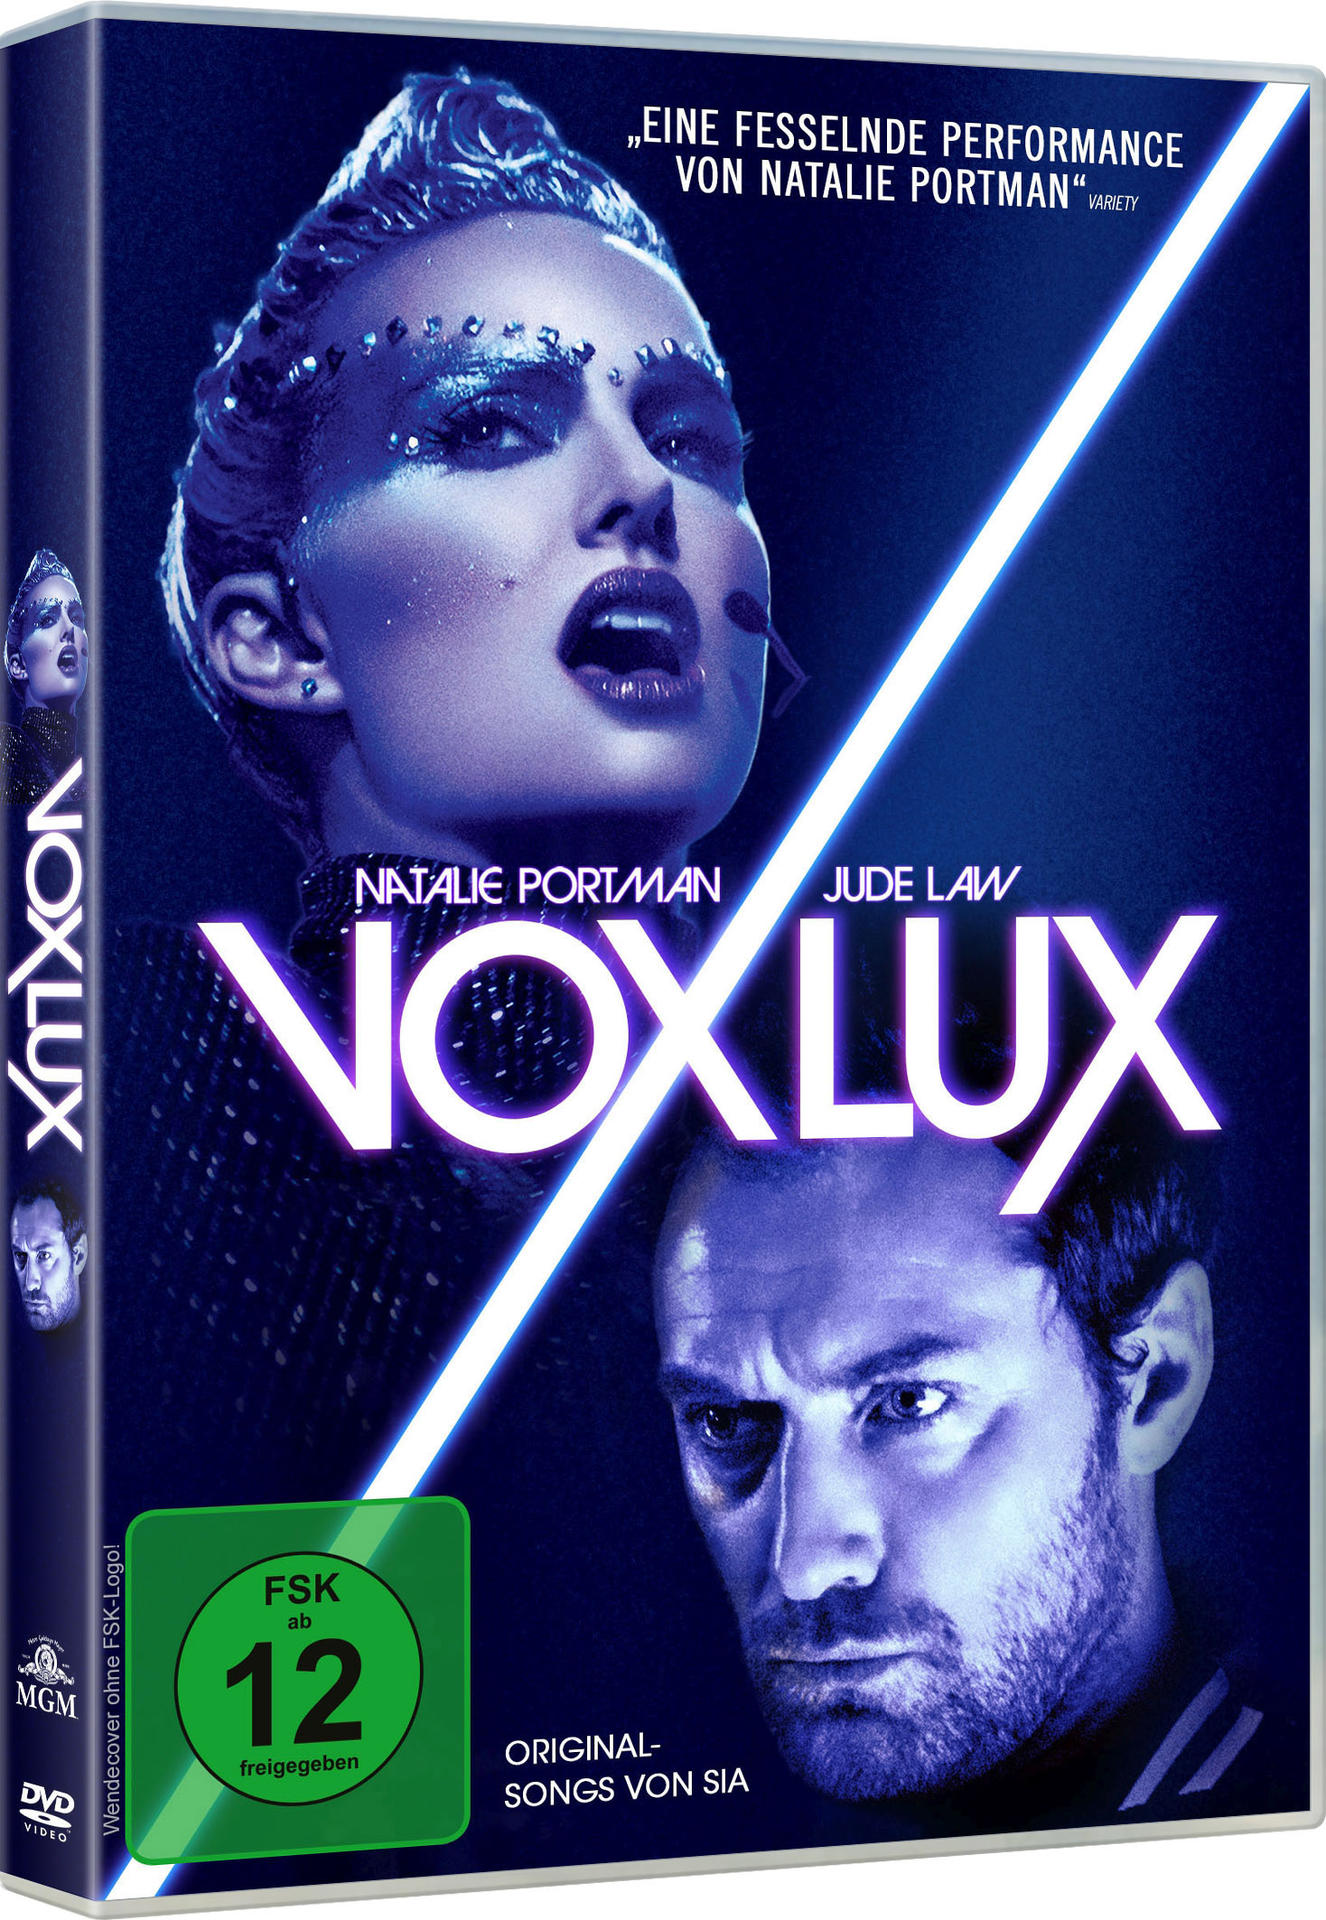 Vox Lux DVD